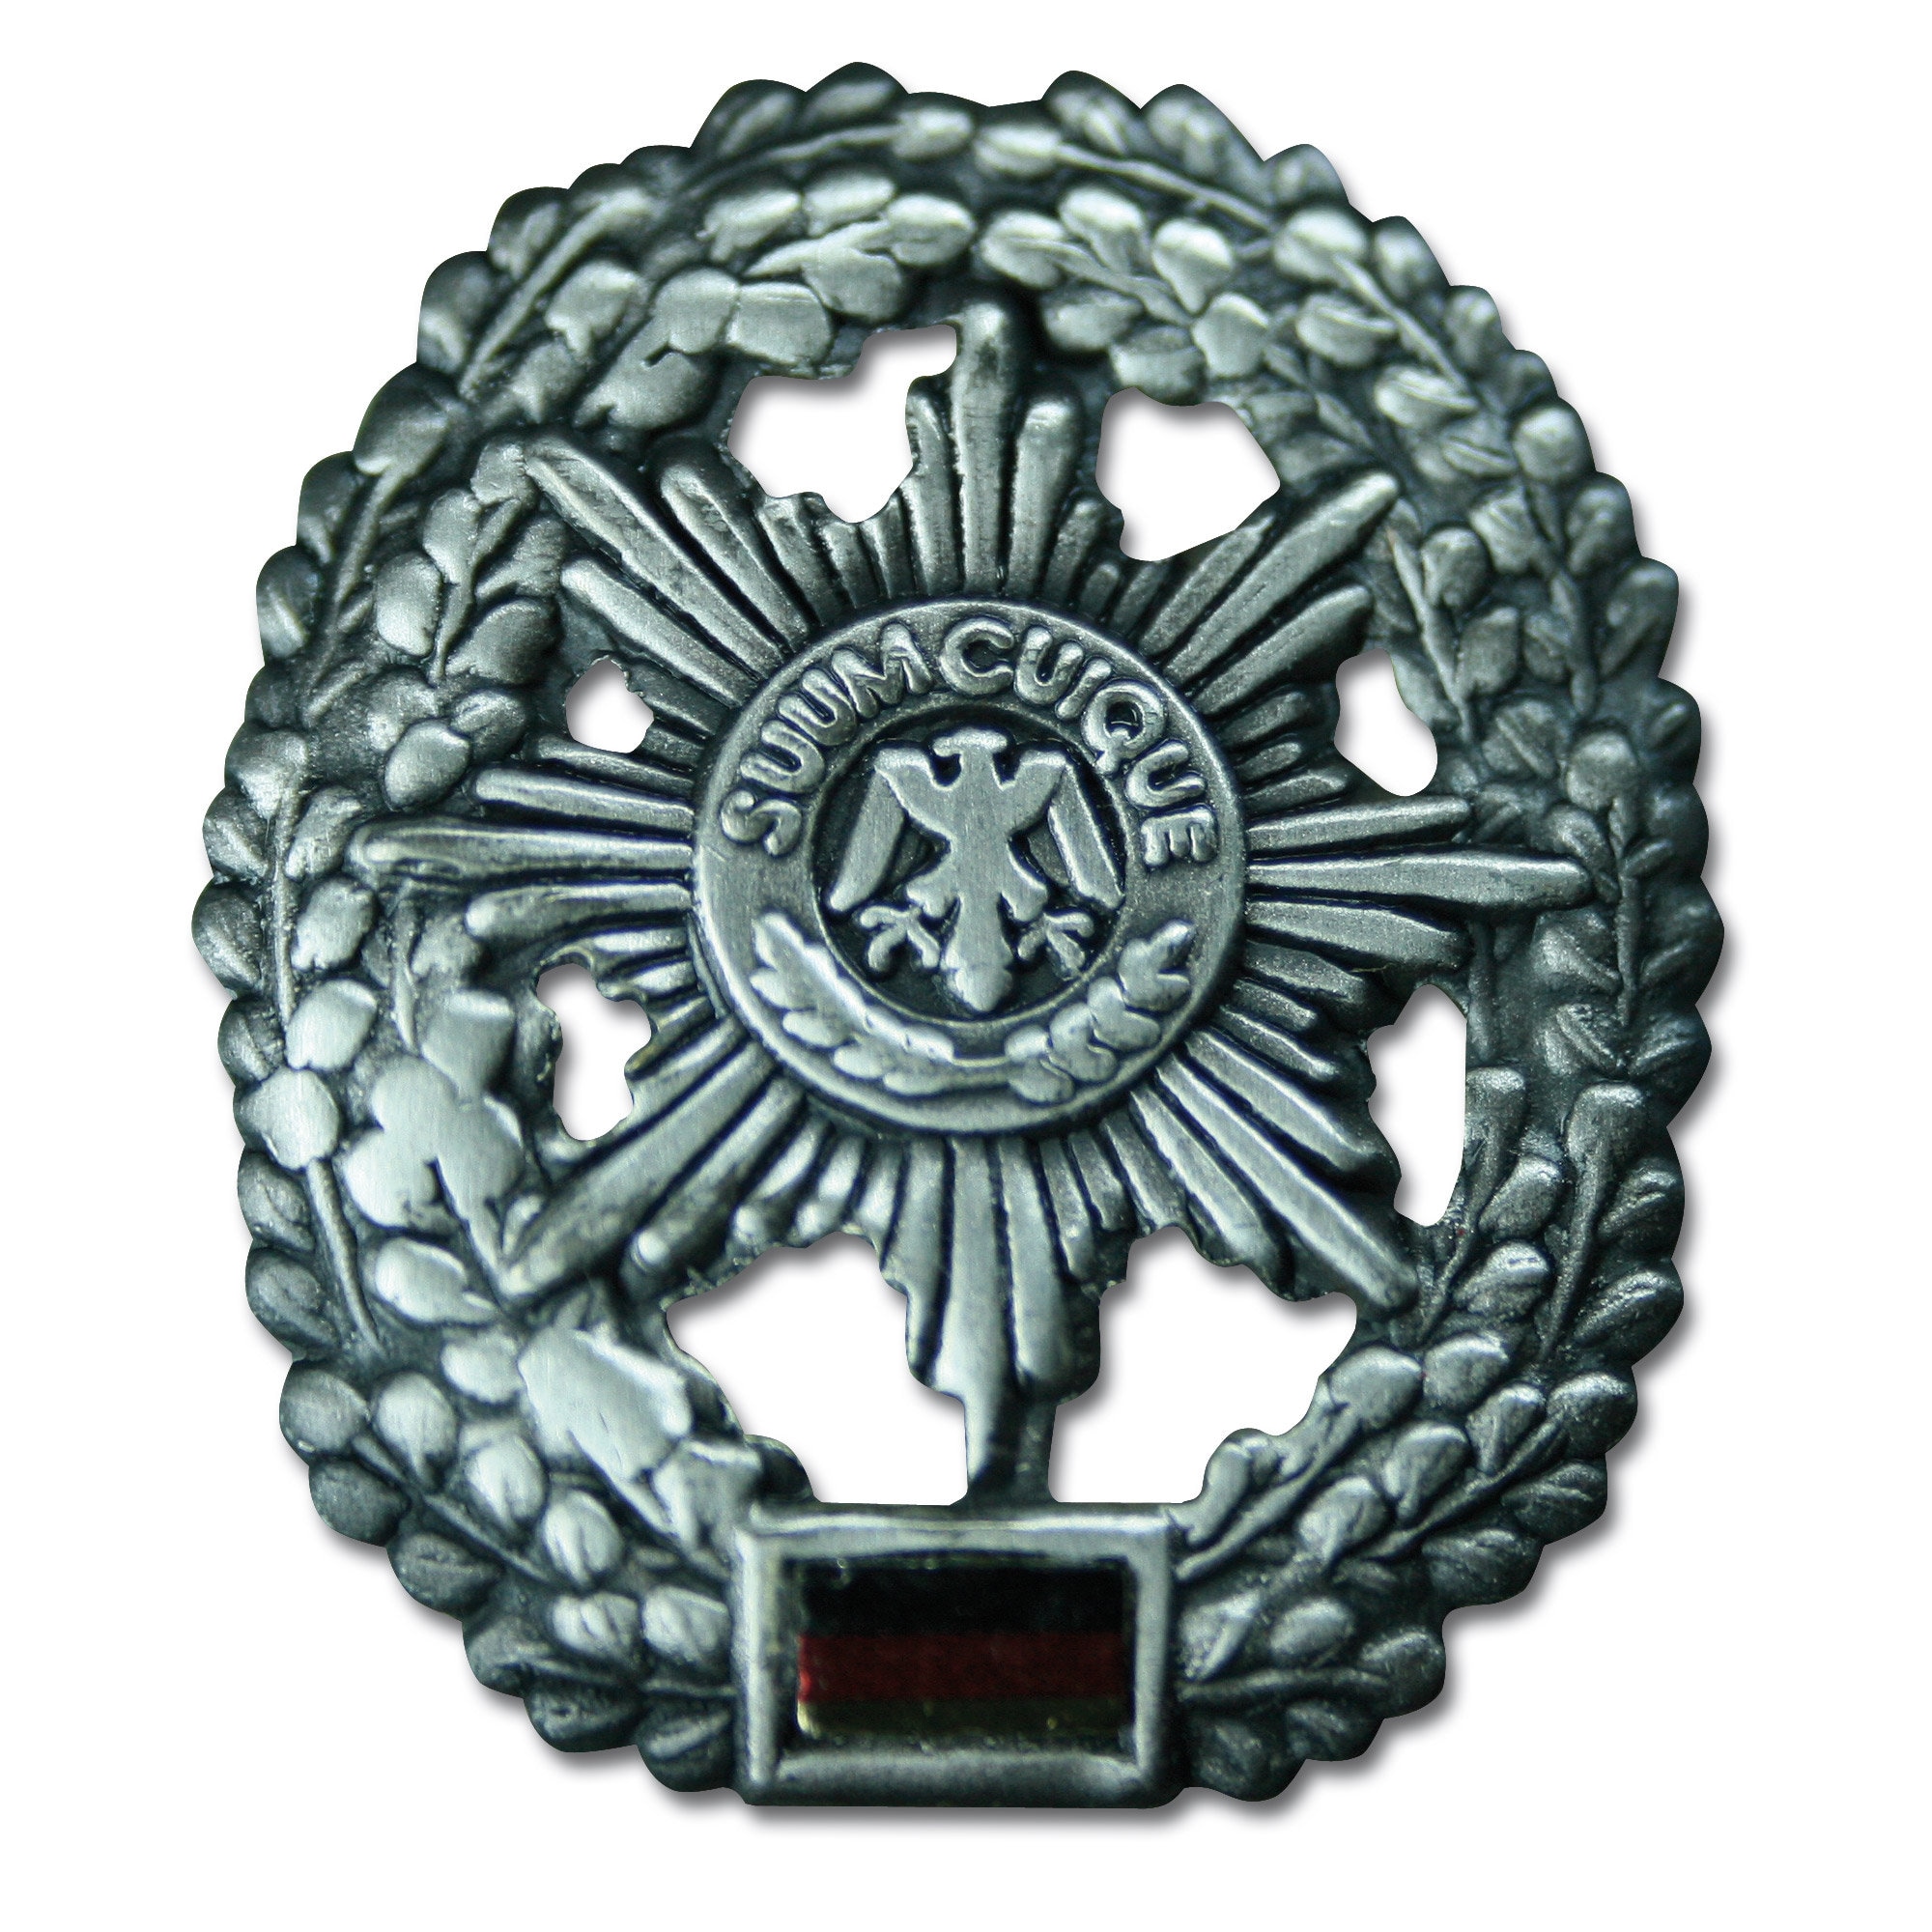 Insigne Special Police métal argenté chez ASMC